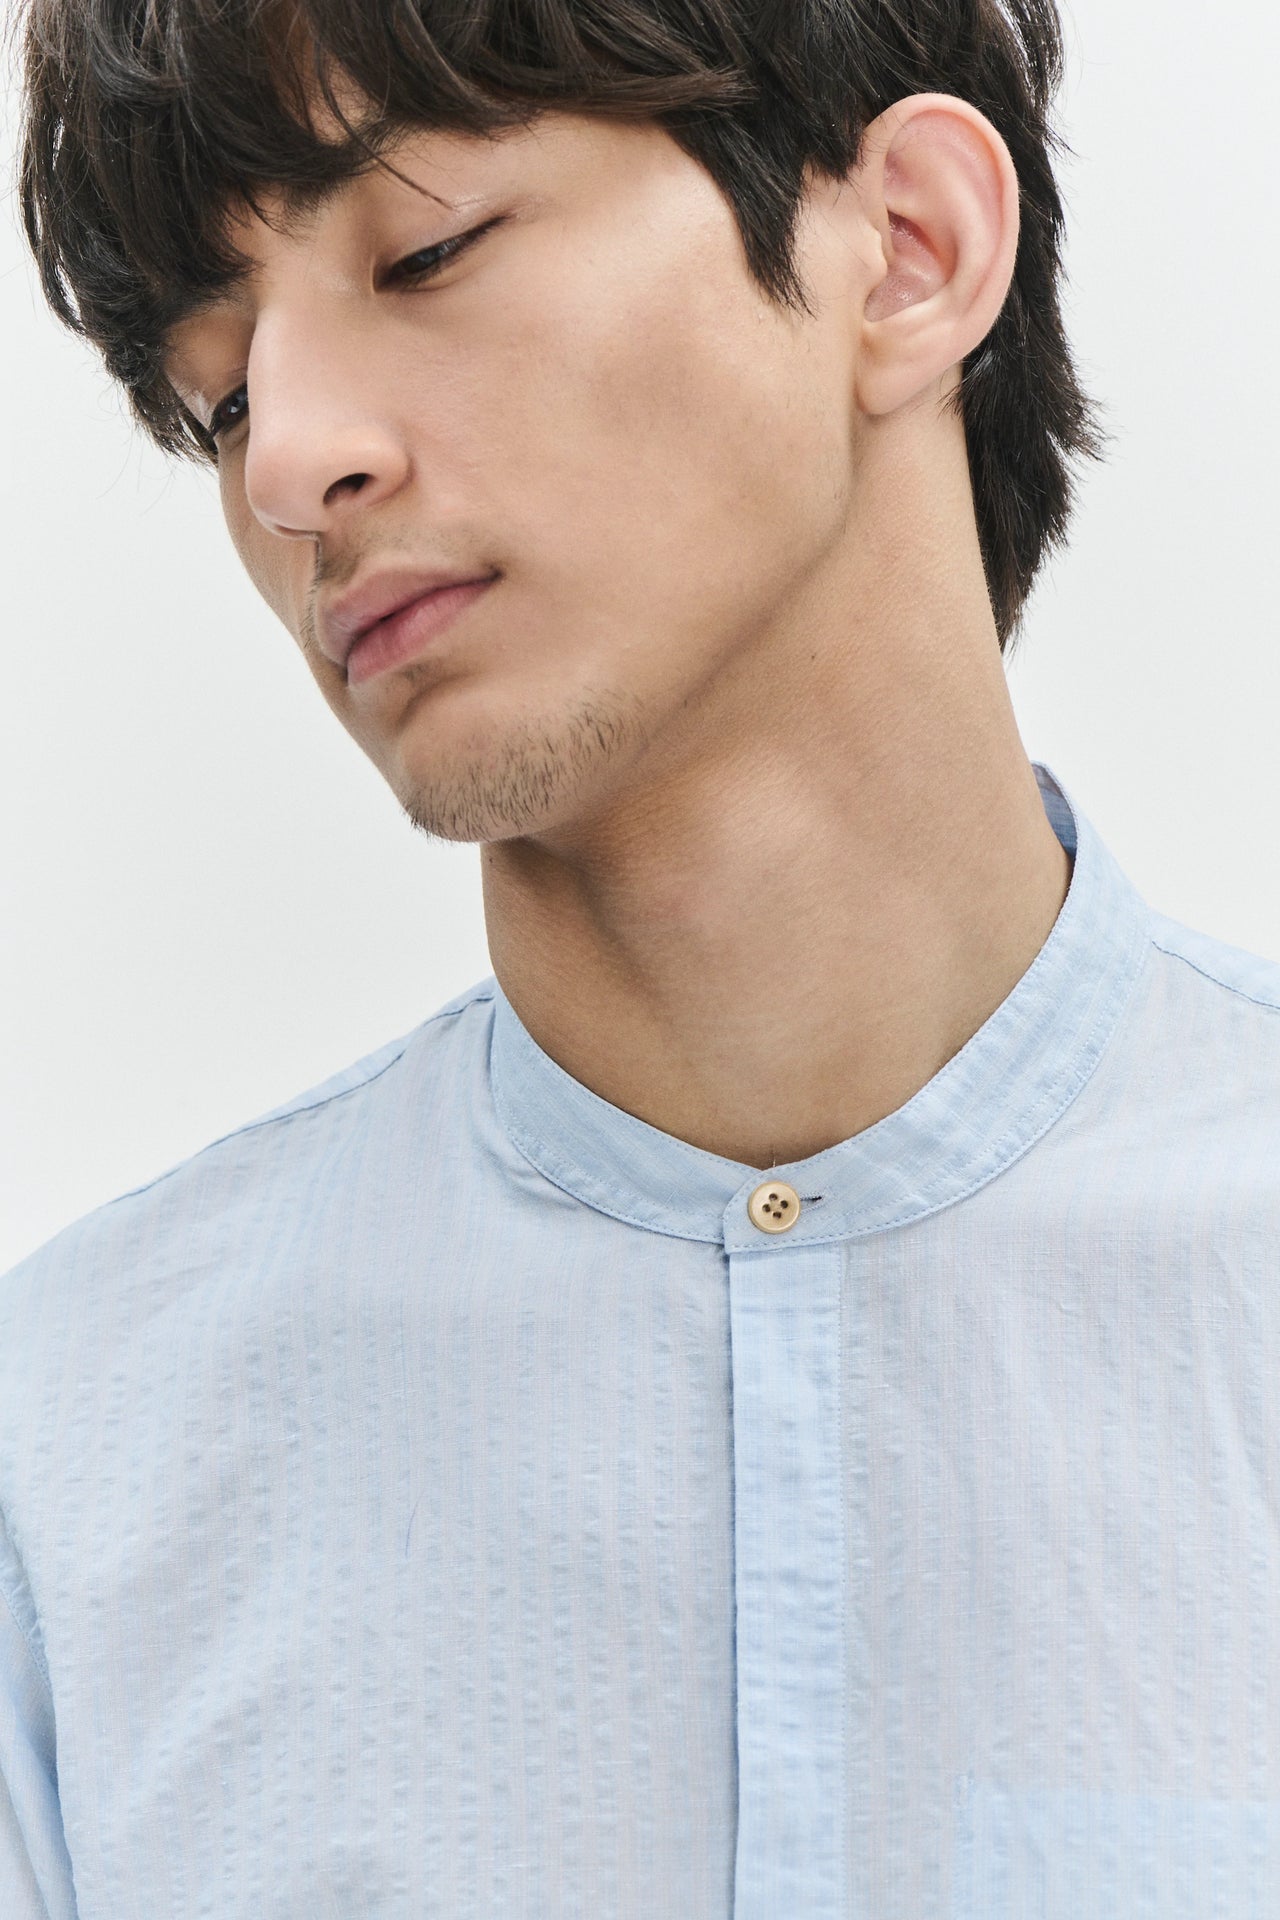 Zen Grandad Collar Shirt in a Light Blue Italian Cotton and Linen Blend Seersucker